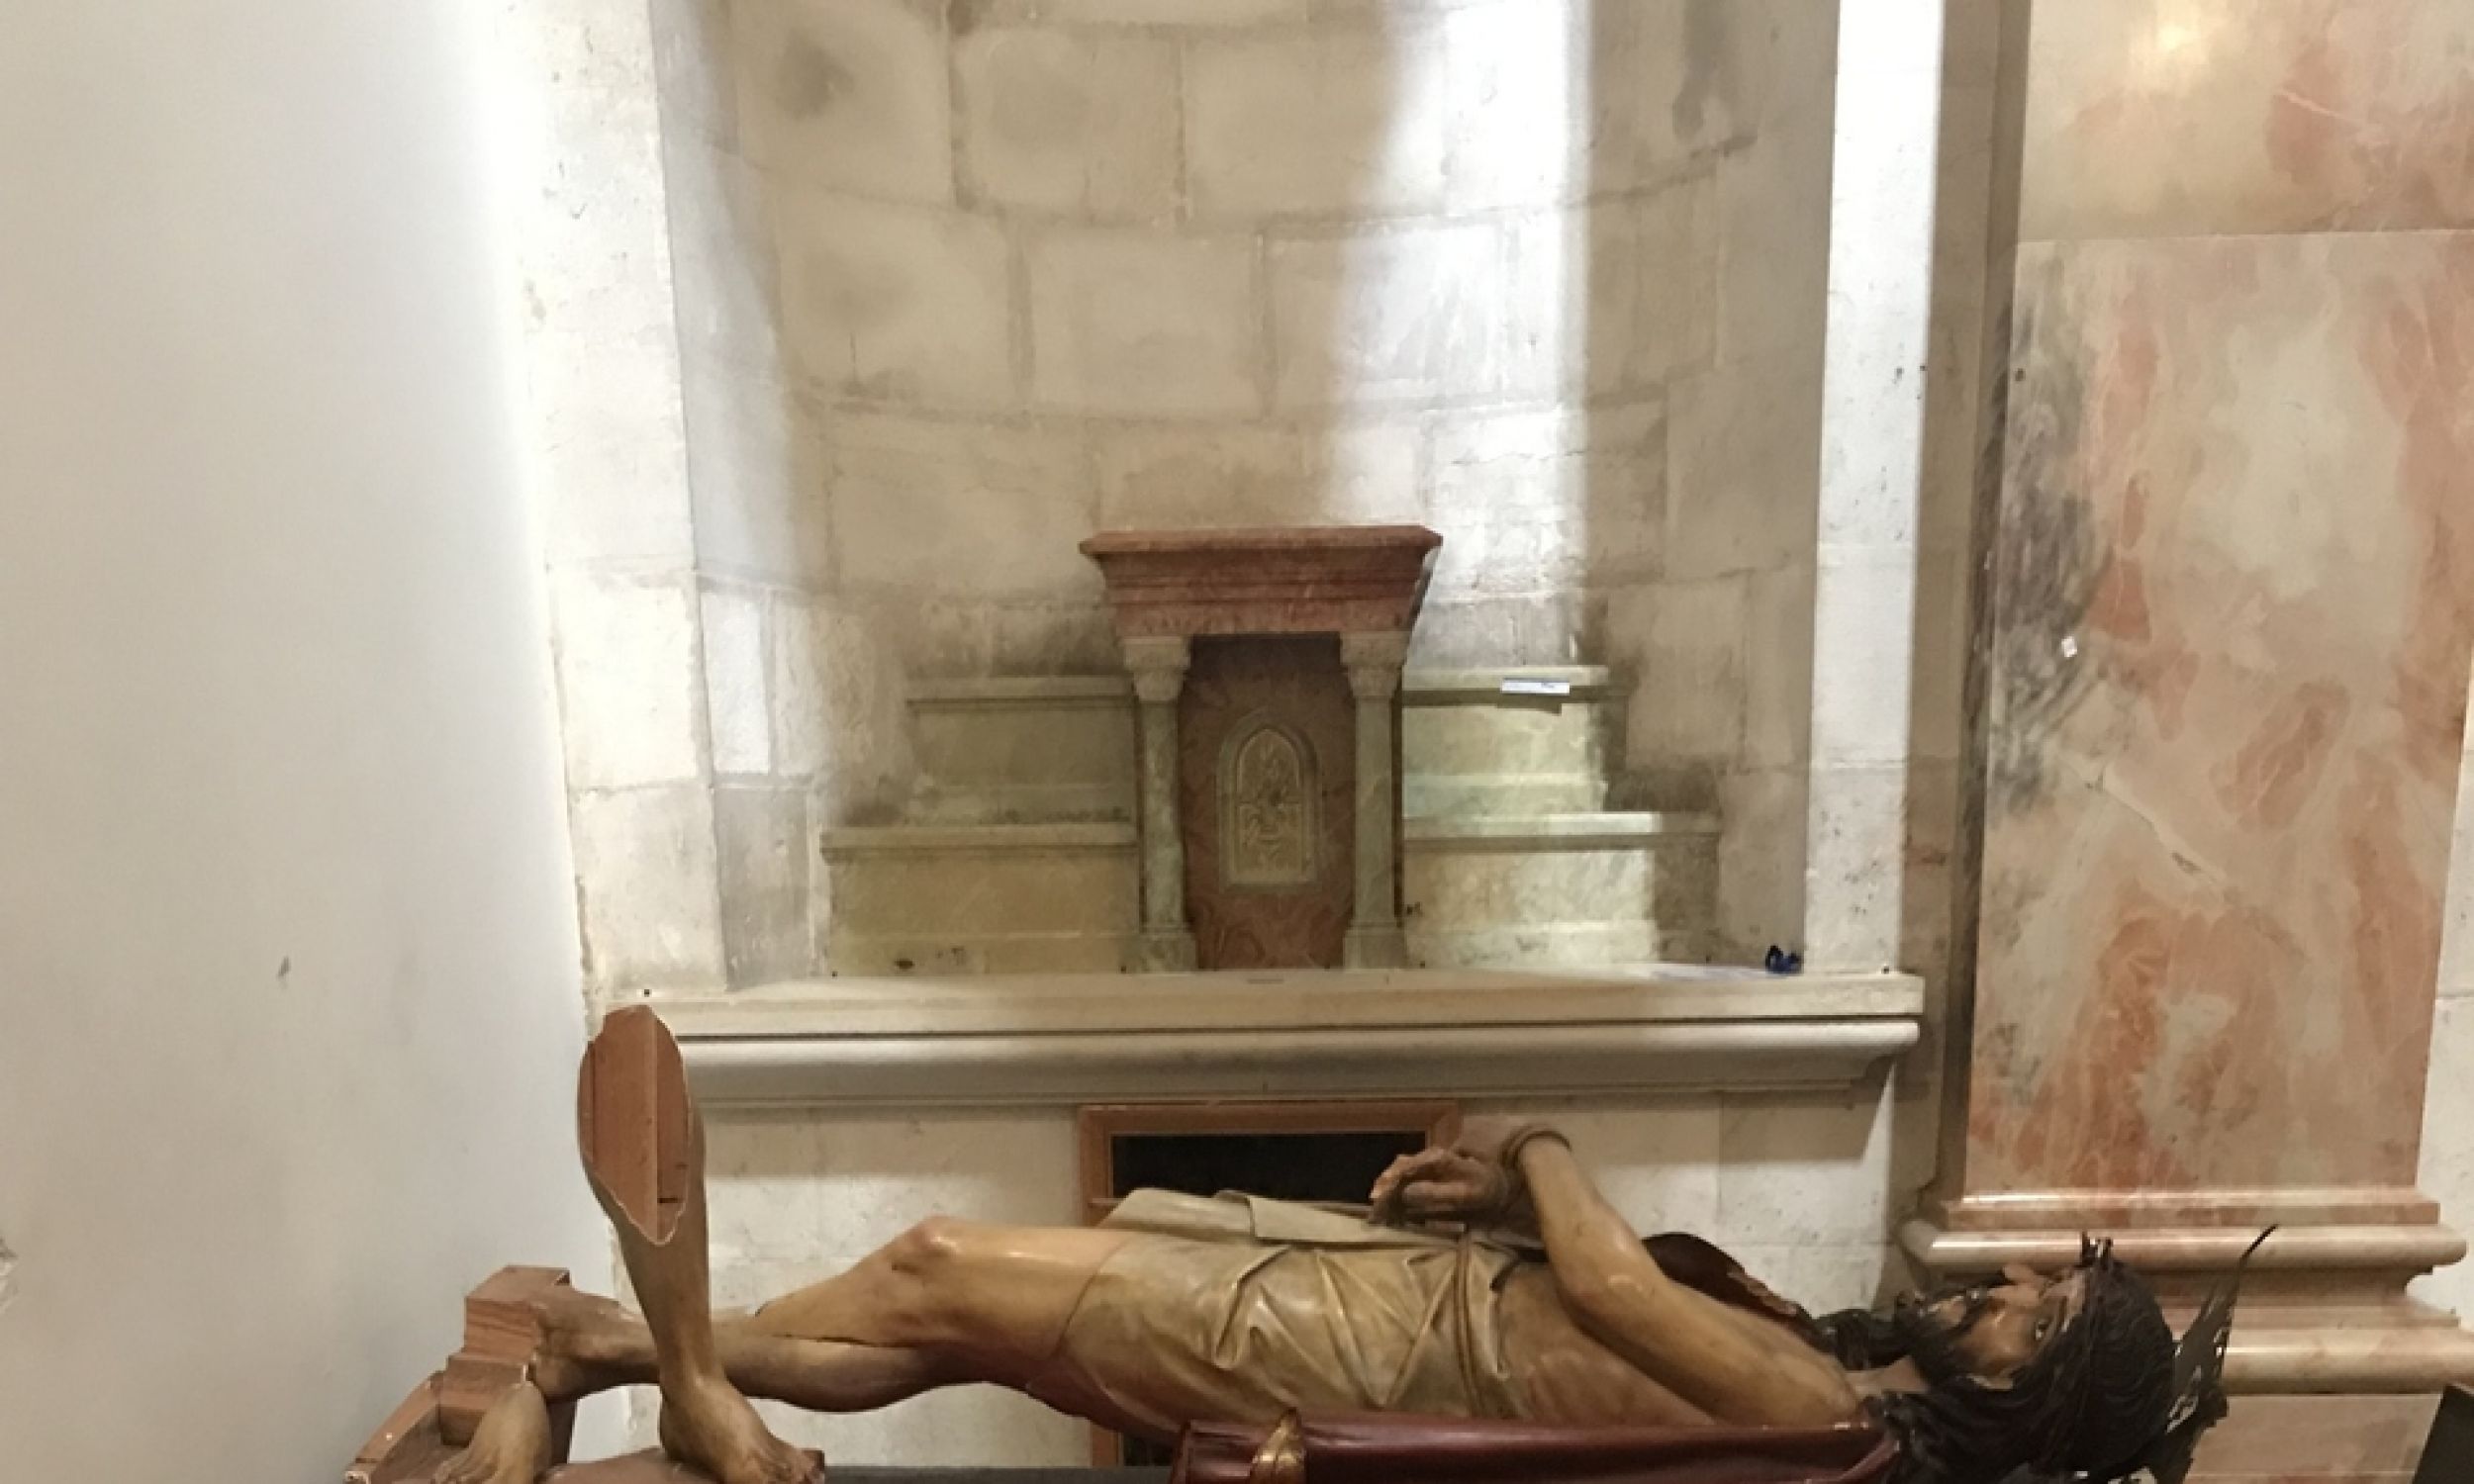 Церква засудження. Пошкоджена статуя Ісуса в терновому вінку. На початку лютого 2023 року надто запальний єврей одним рухом мачете відтяв їй ноги.